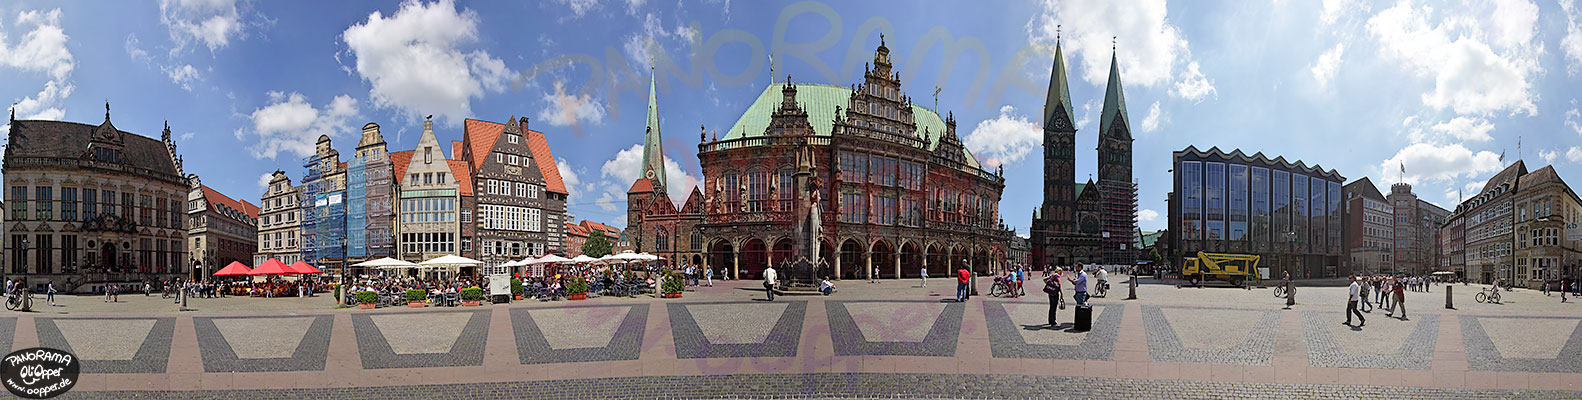 Marktplatz Bremen mit Rathaus und Dom - p003 - (c) by Oliver Opper